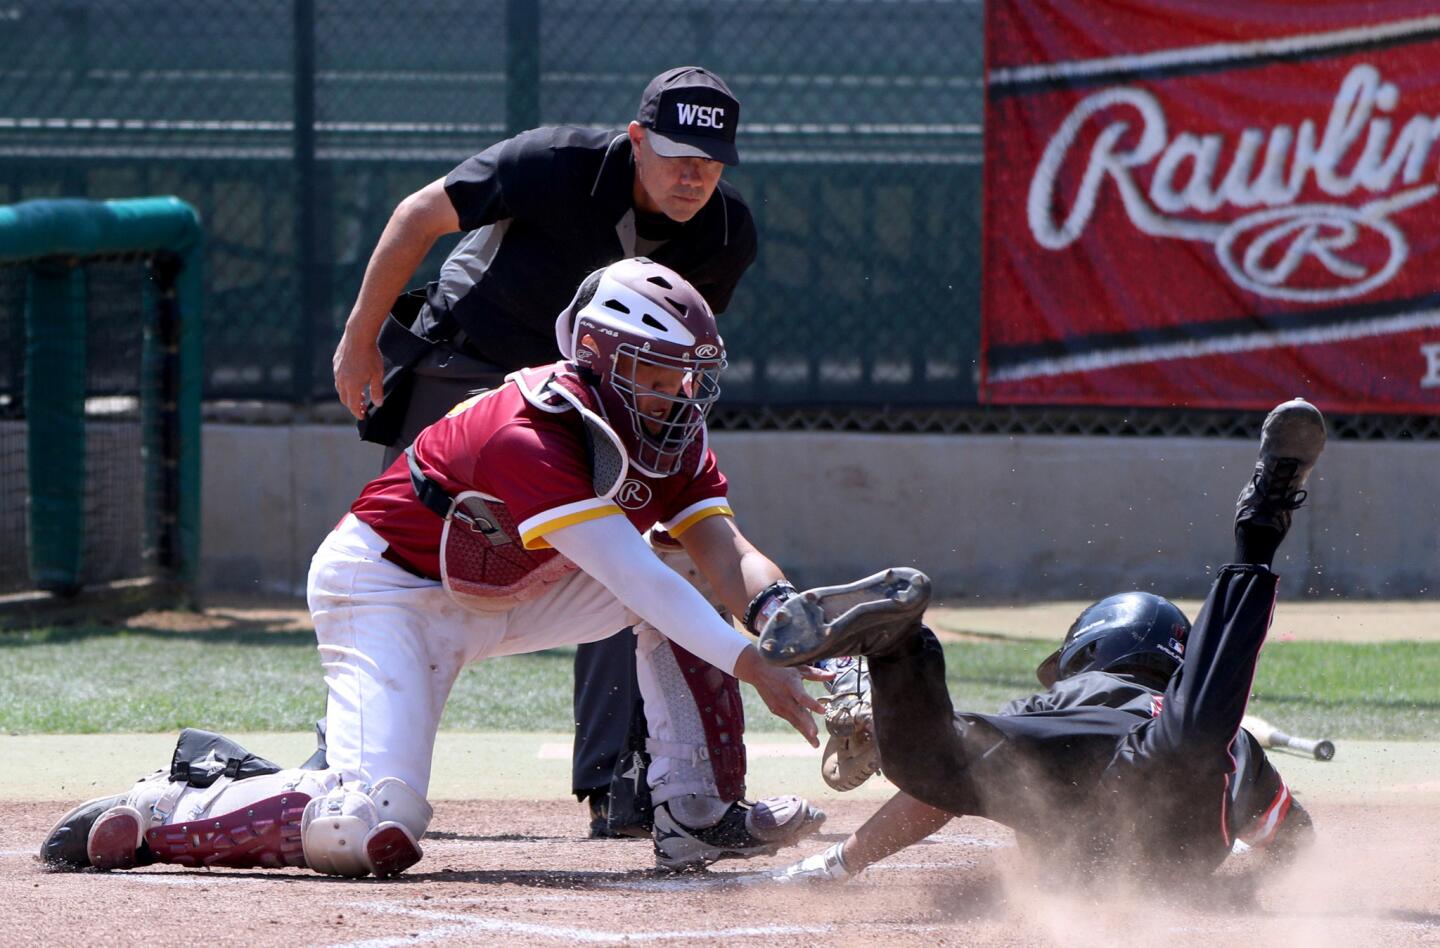 Photo Gallery: Glendale College baseball vs. Santa Barbara in regional championships